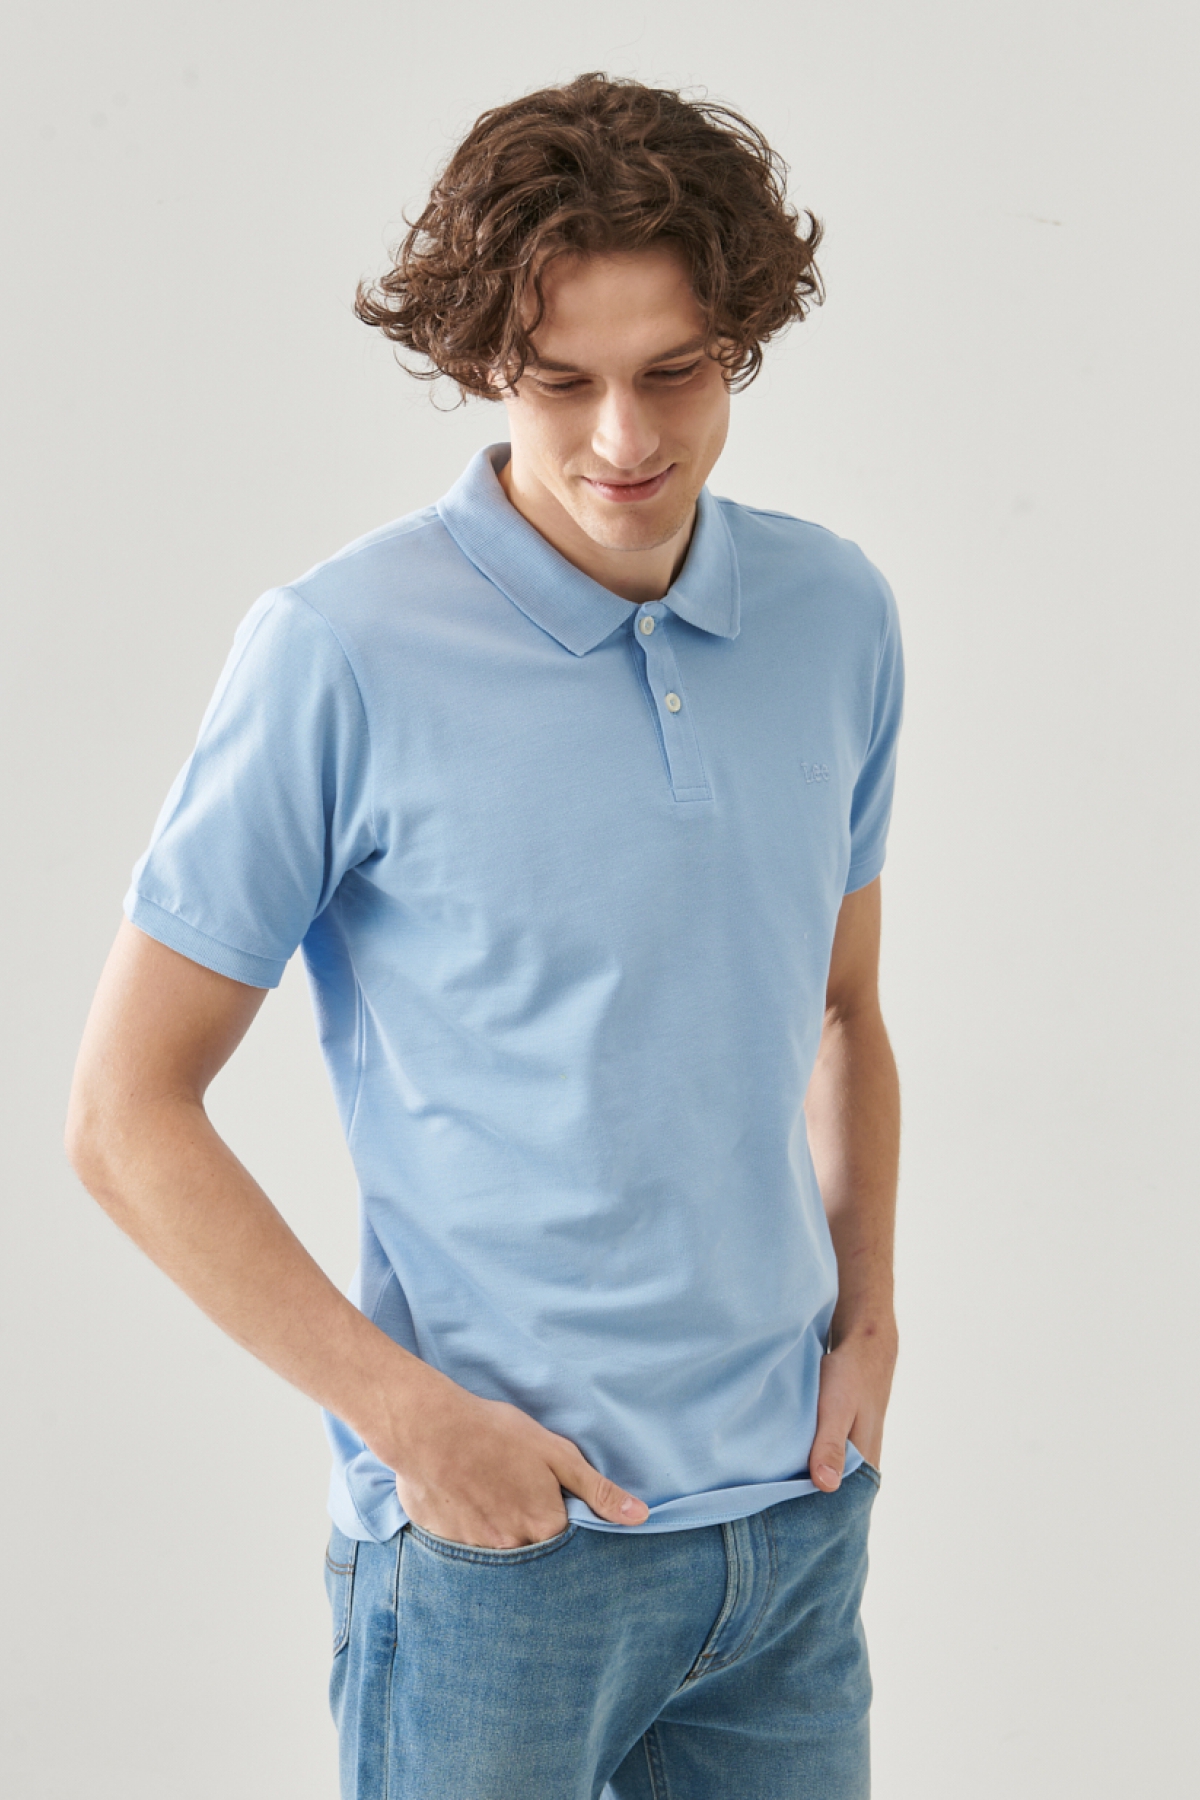 discount 77% MEN FASHION Shirts & T-shirts Combined Blue L Zara polo 